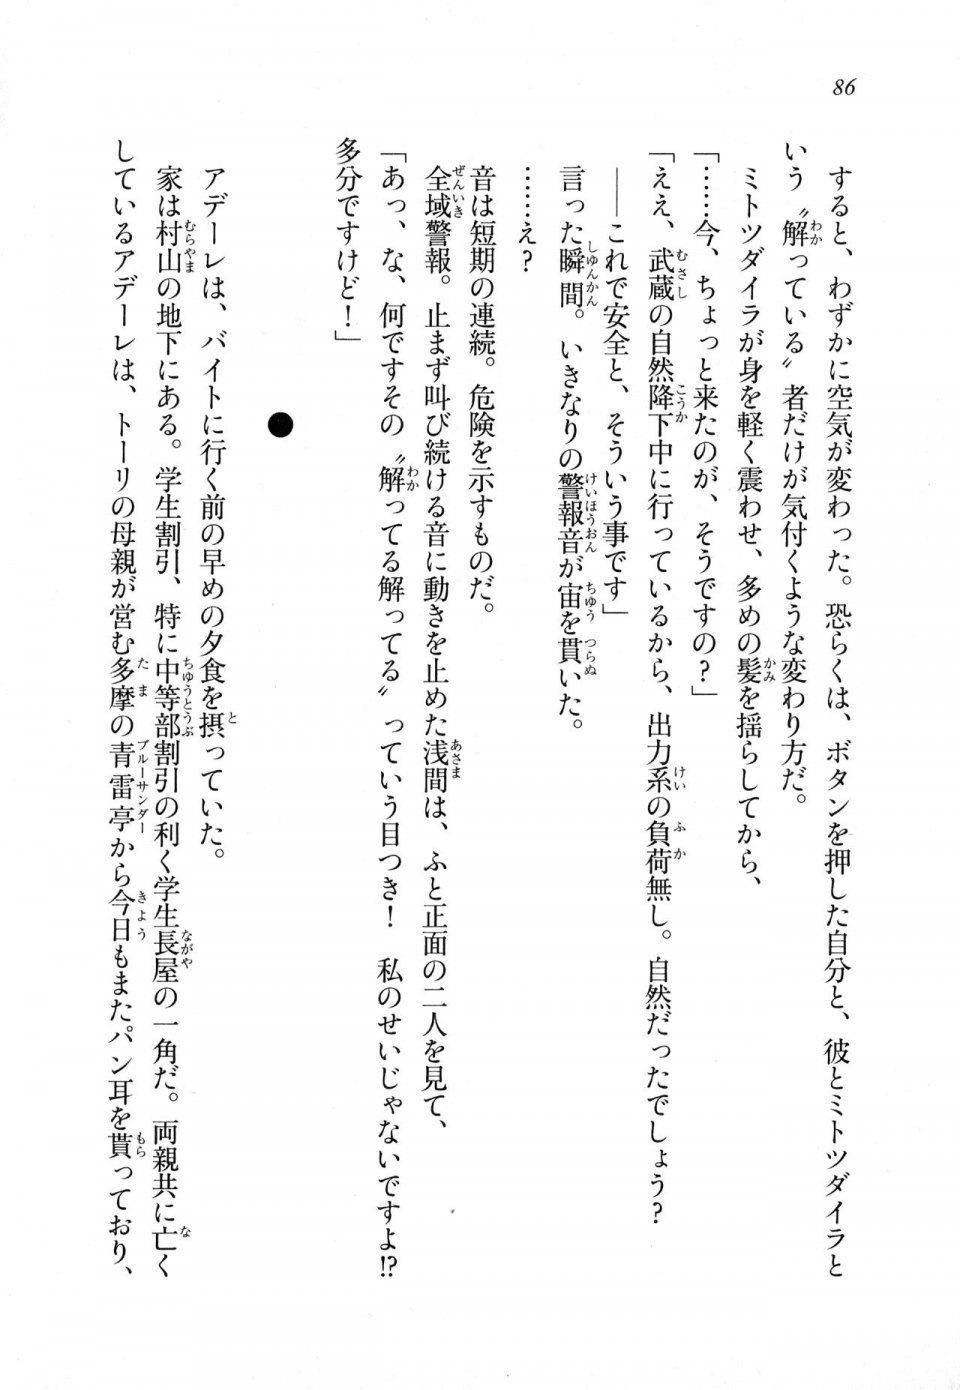 Kyoukai Senjou no Horizon LN Sidestory Vol 1 - Photo #84